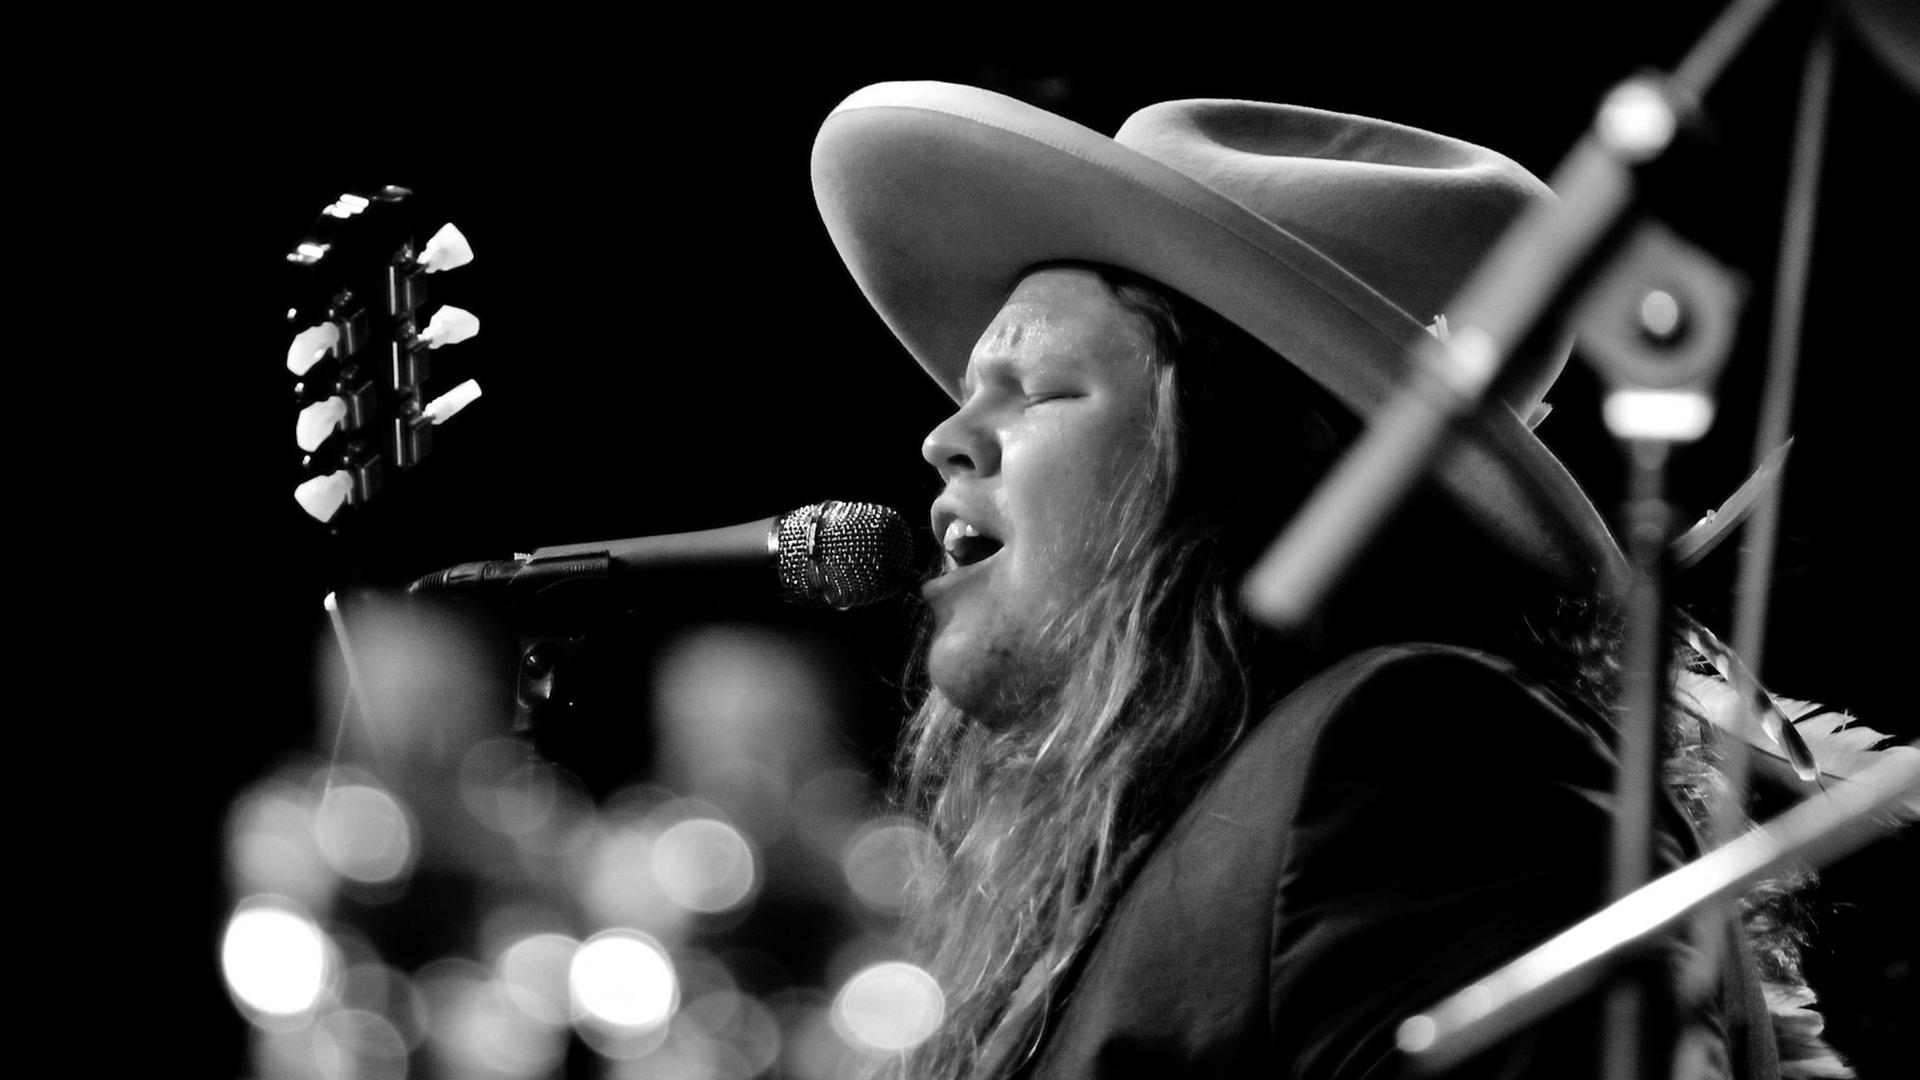 Ein junger Mann mit blonden langen Haaren steht auf einer Bühne, spielt Gitarre und singt, dabei trägt er einen großen runden Hut.